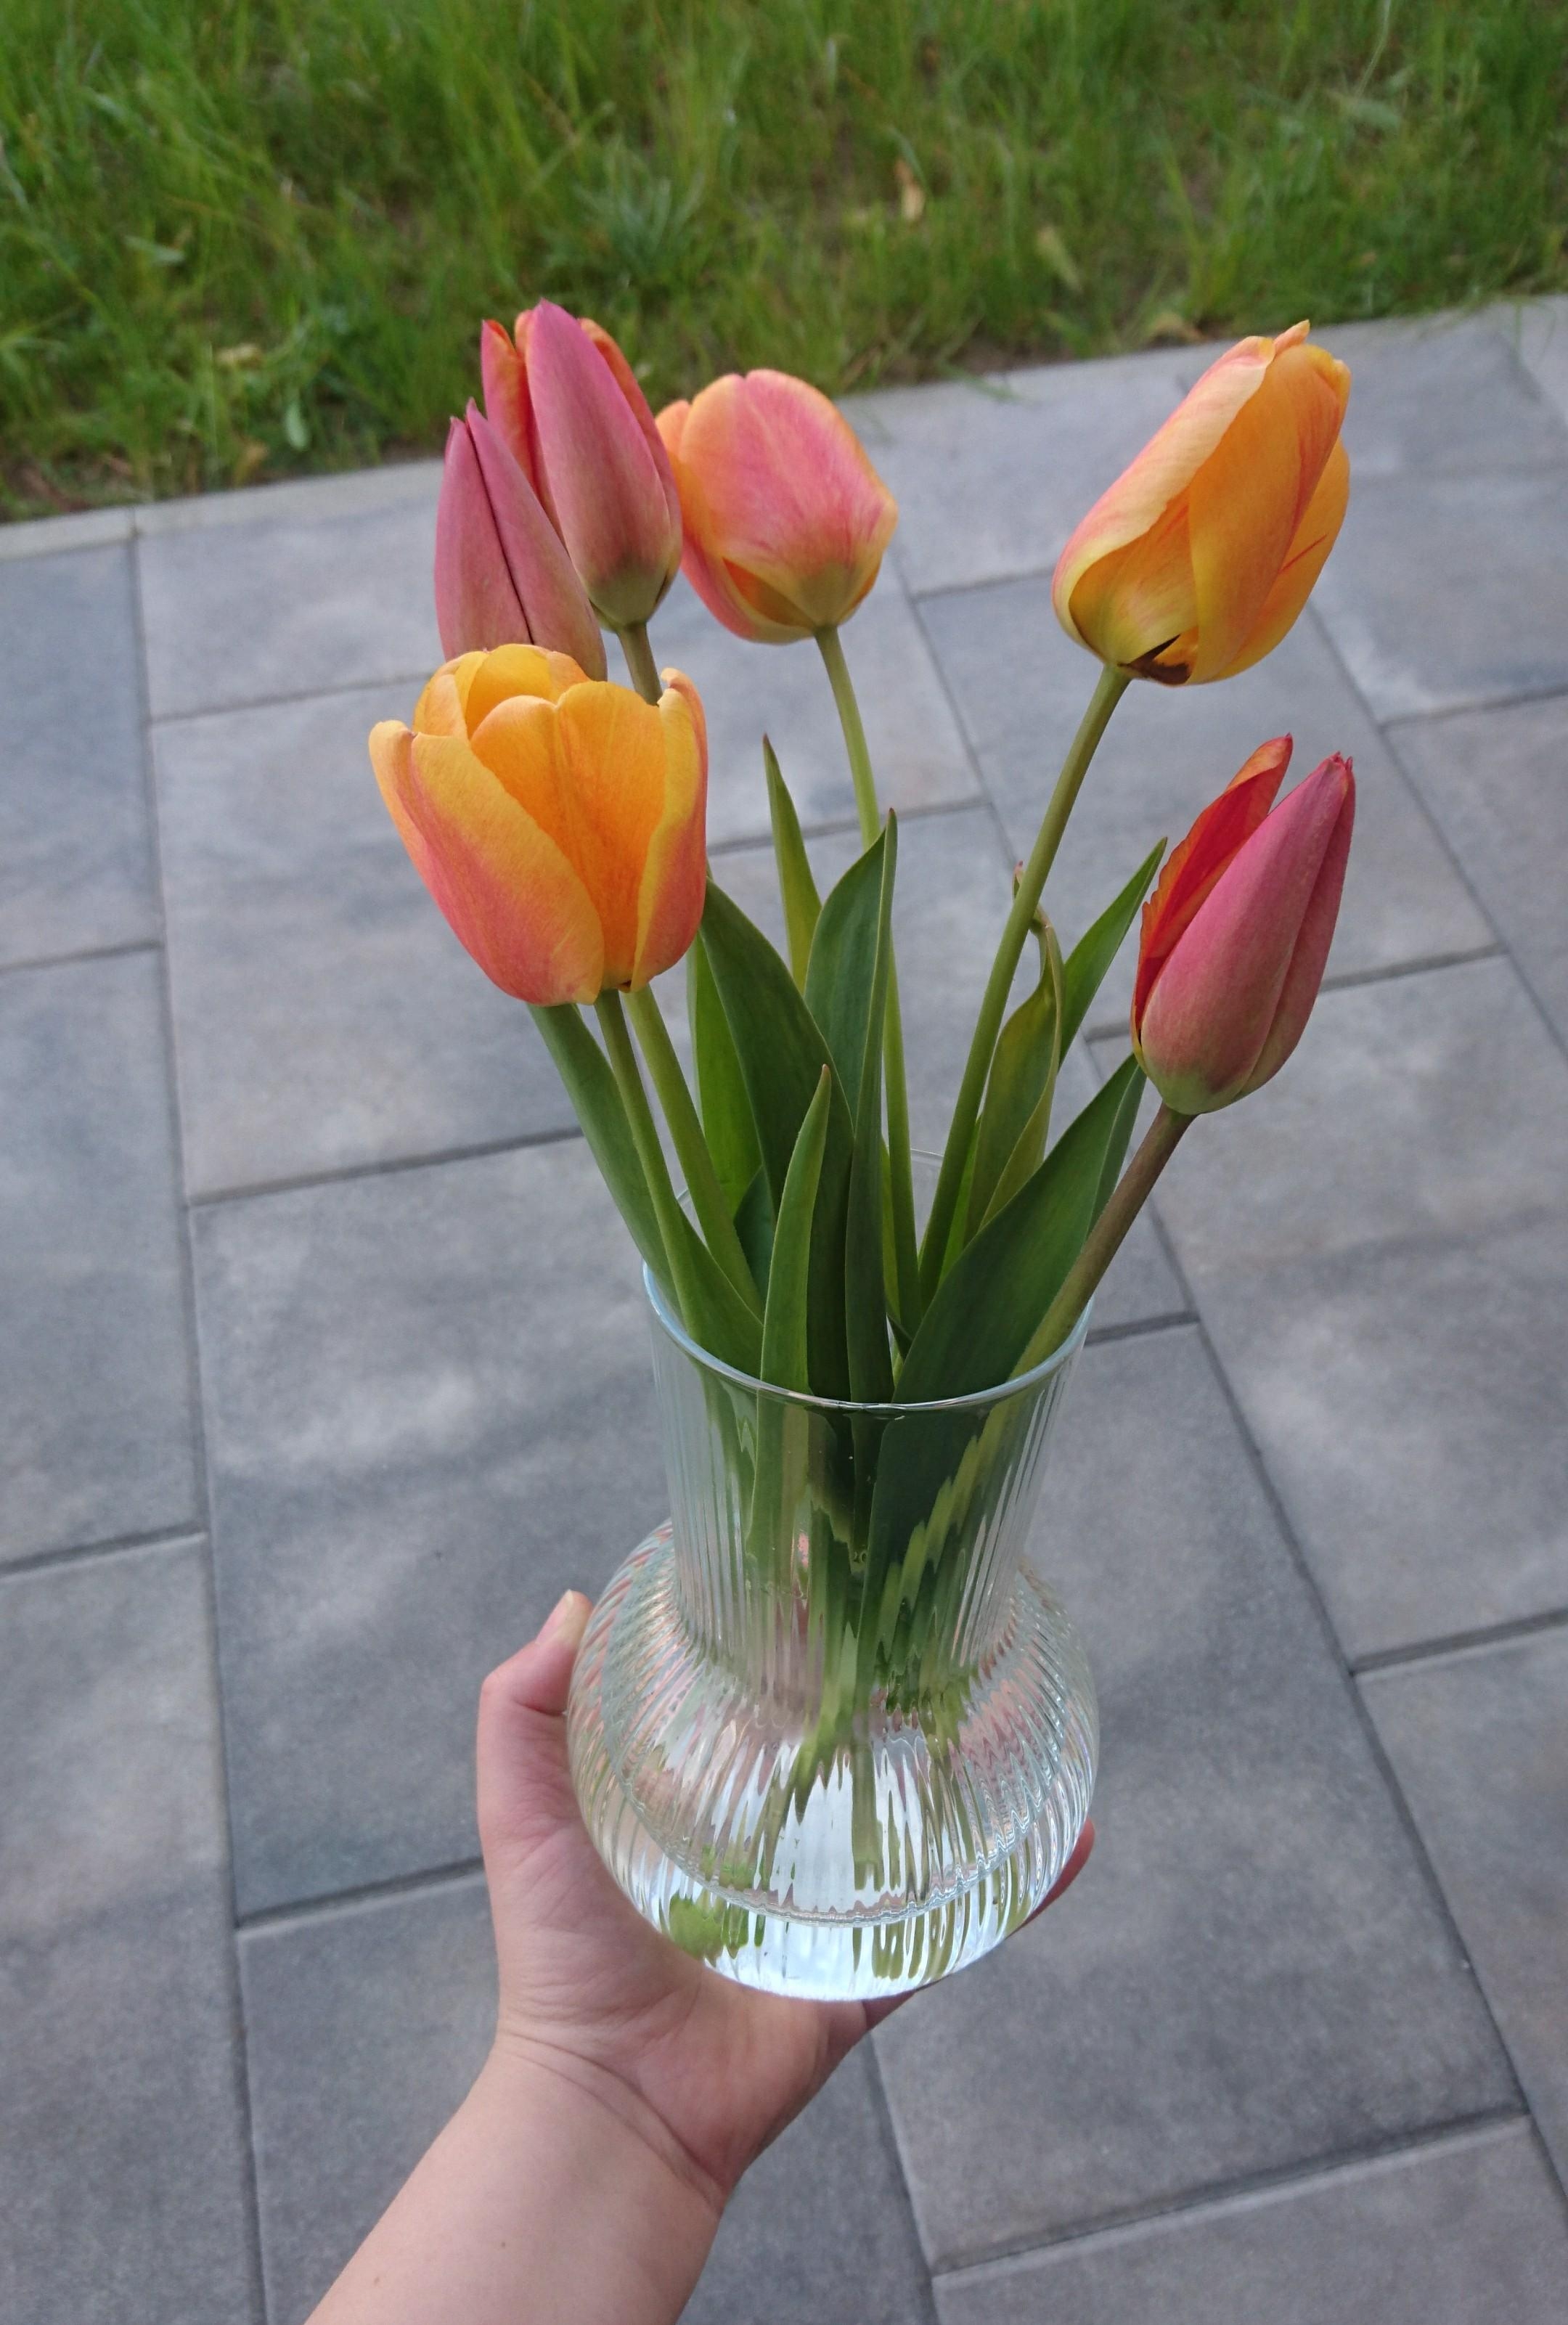 Noch schnell ein paar Tulpen aus dem Garten nach drinnen bringen ehe die Saison vorbei ist. Ich liebe die Farben!